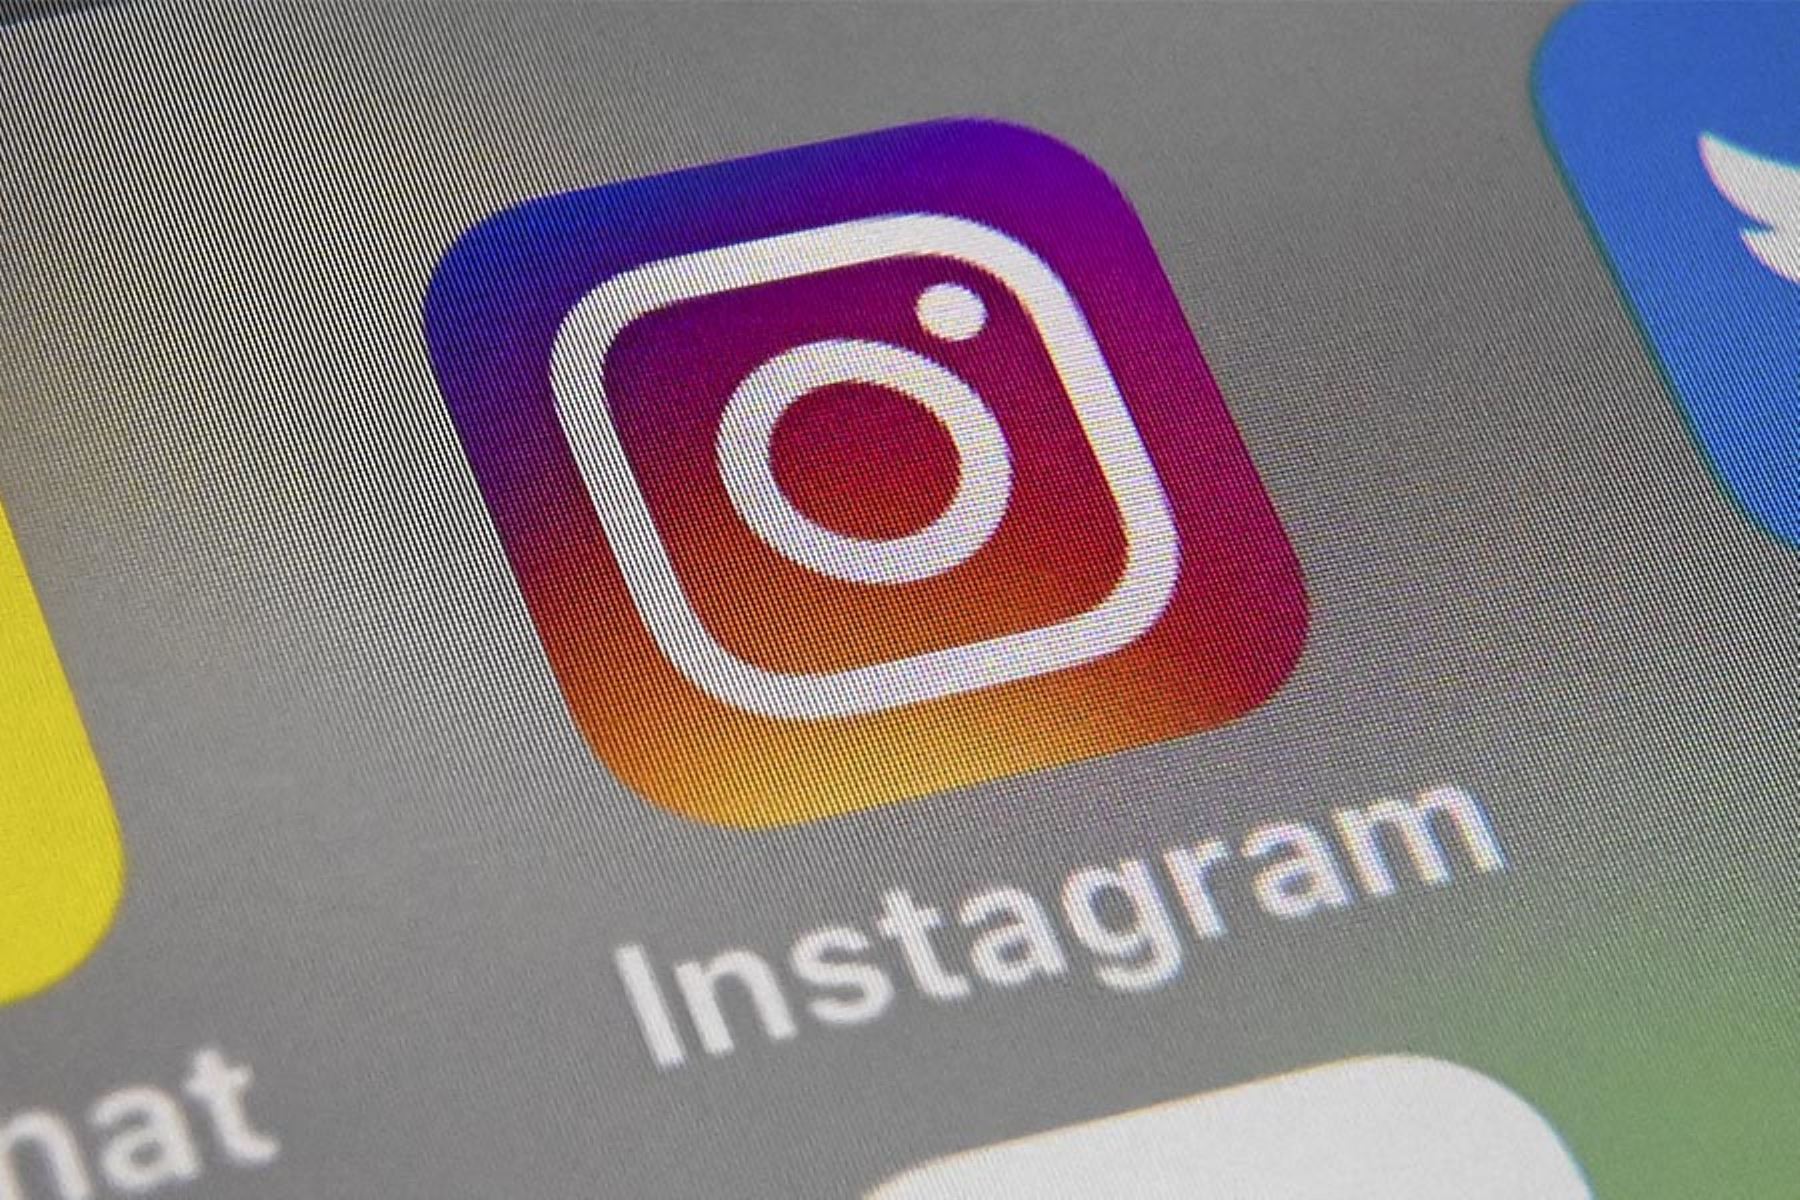 Instagram implementará herramientas alternativas de supervisión parental para adolescentes de 13 años a más. Foto: AFP